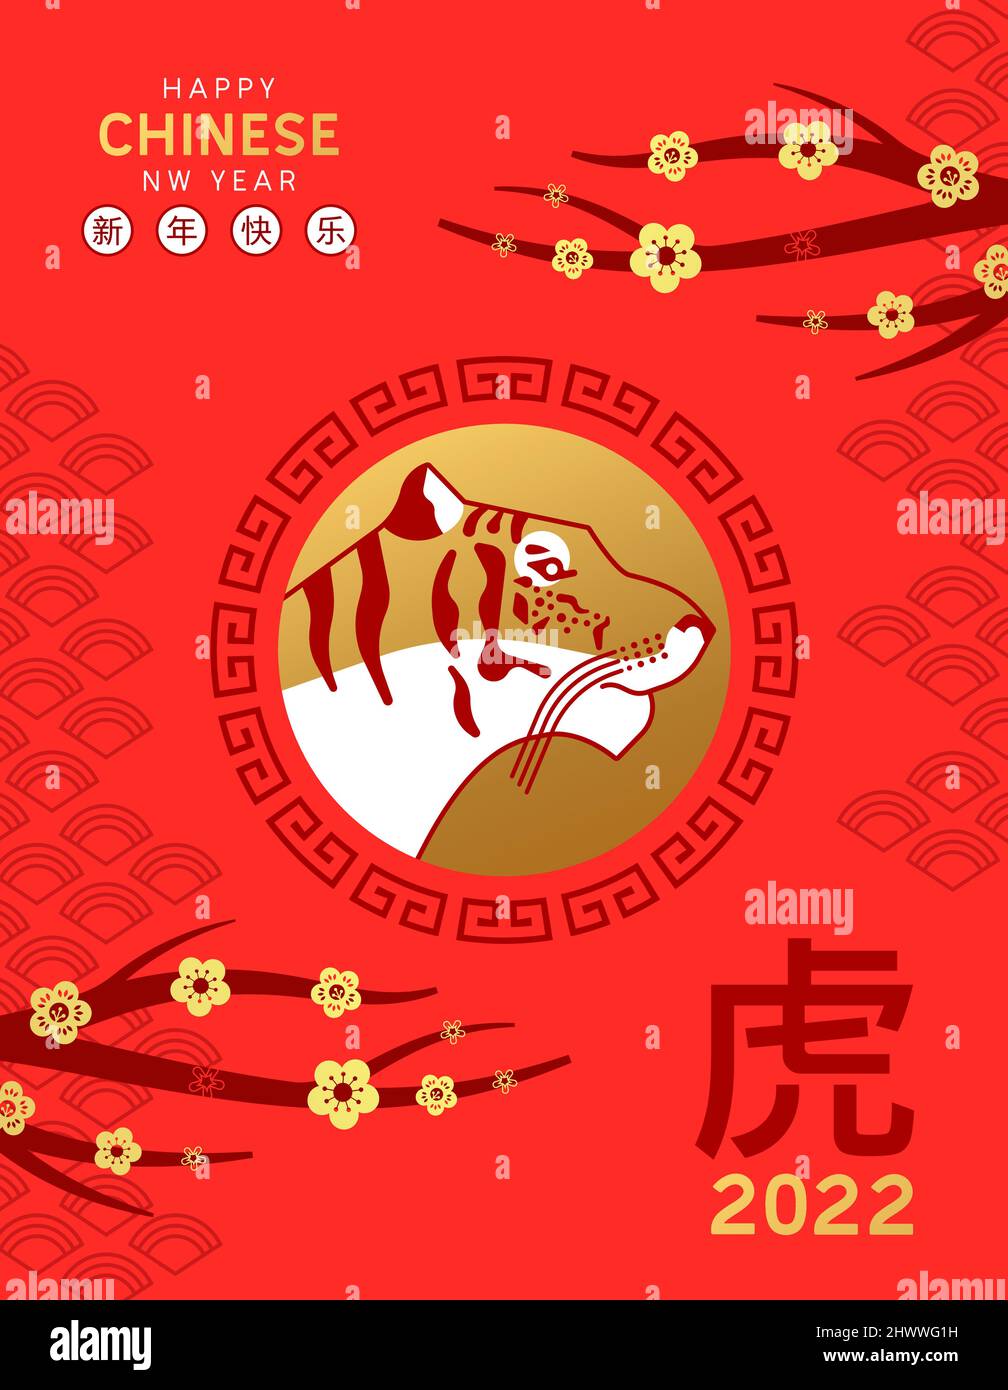 Ilustración moderna de la tarjeta de felicitación del Año Nuevo Chino 2022. Cabeza de animal dorada con flor de ciruela tradicional fondo de árbol. Translatio de caligrafía Ilustración del Vector